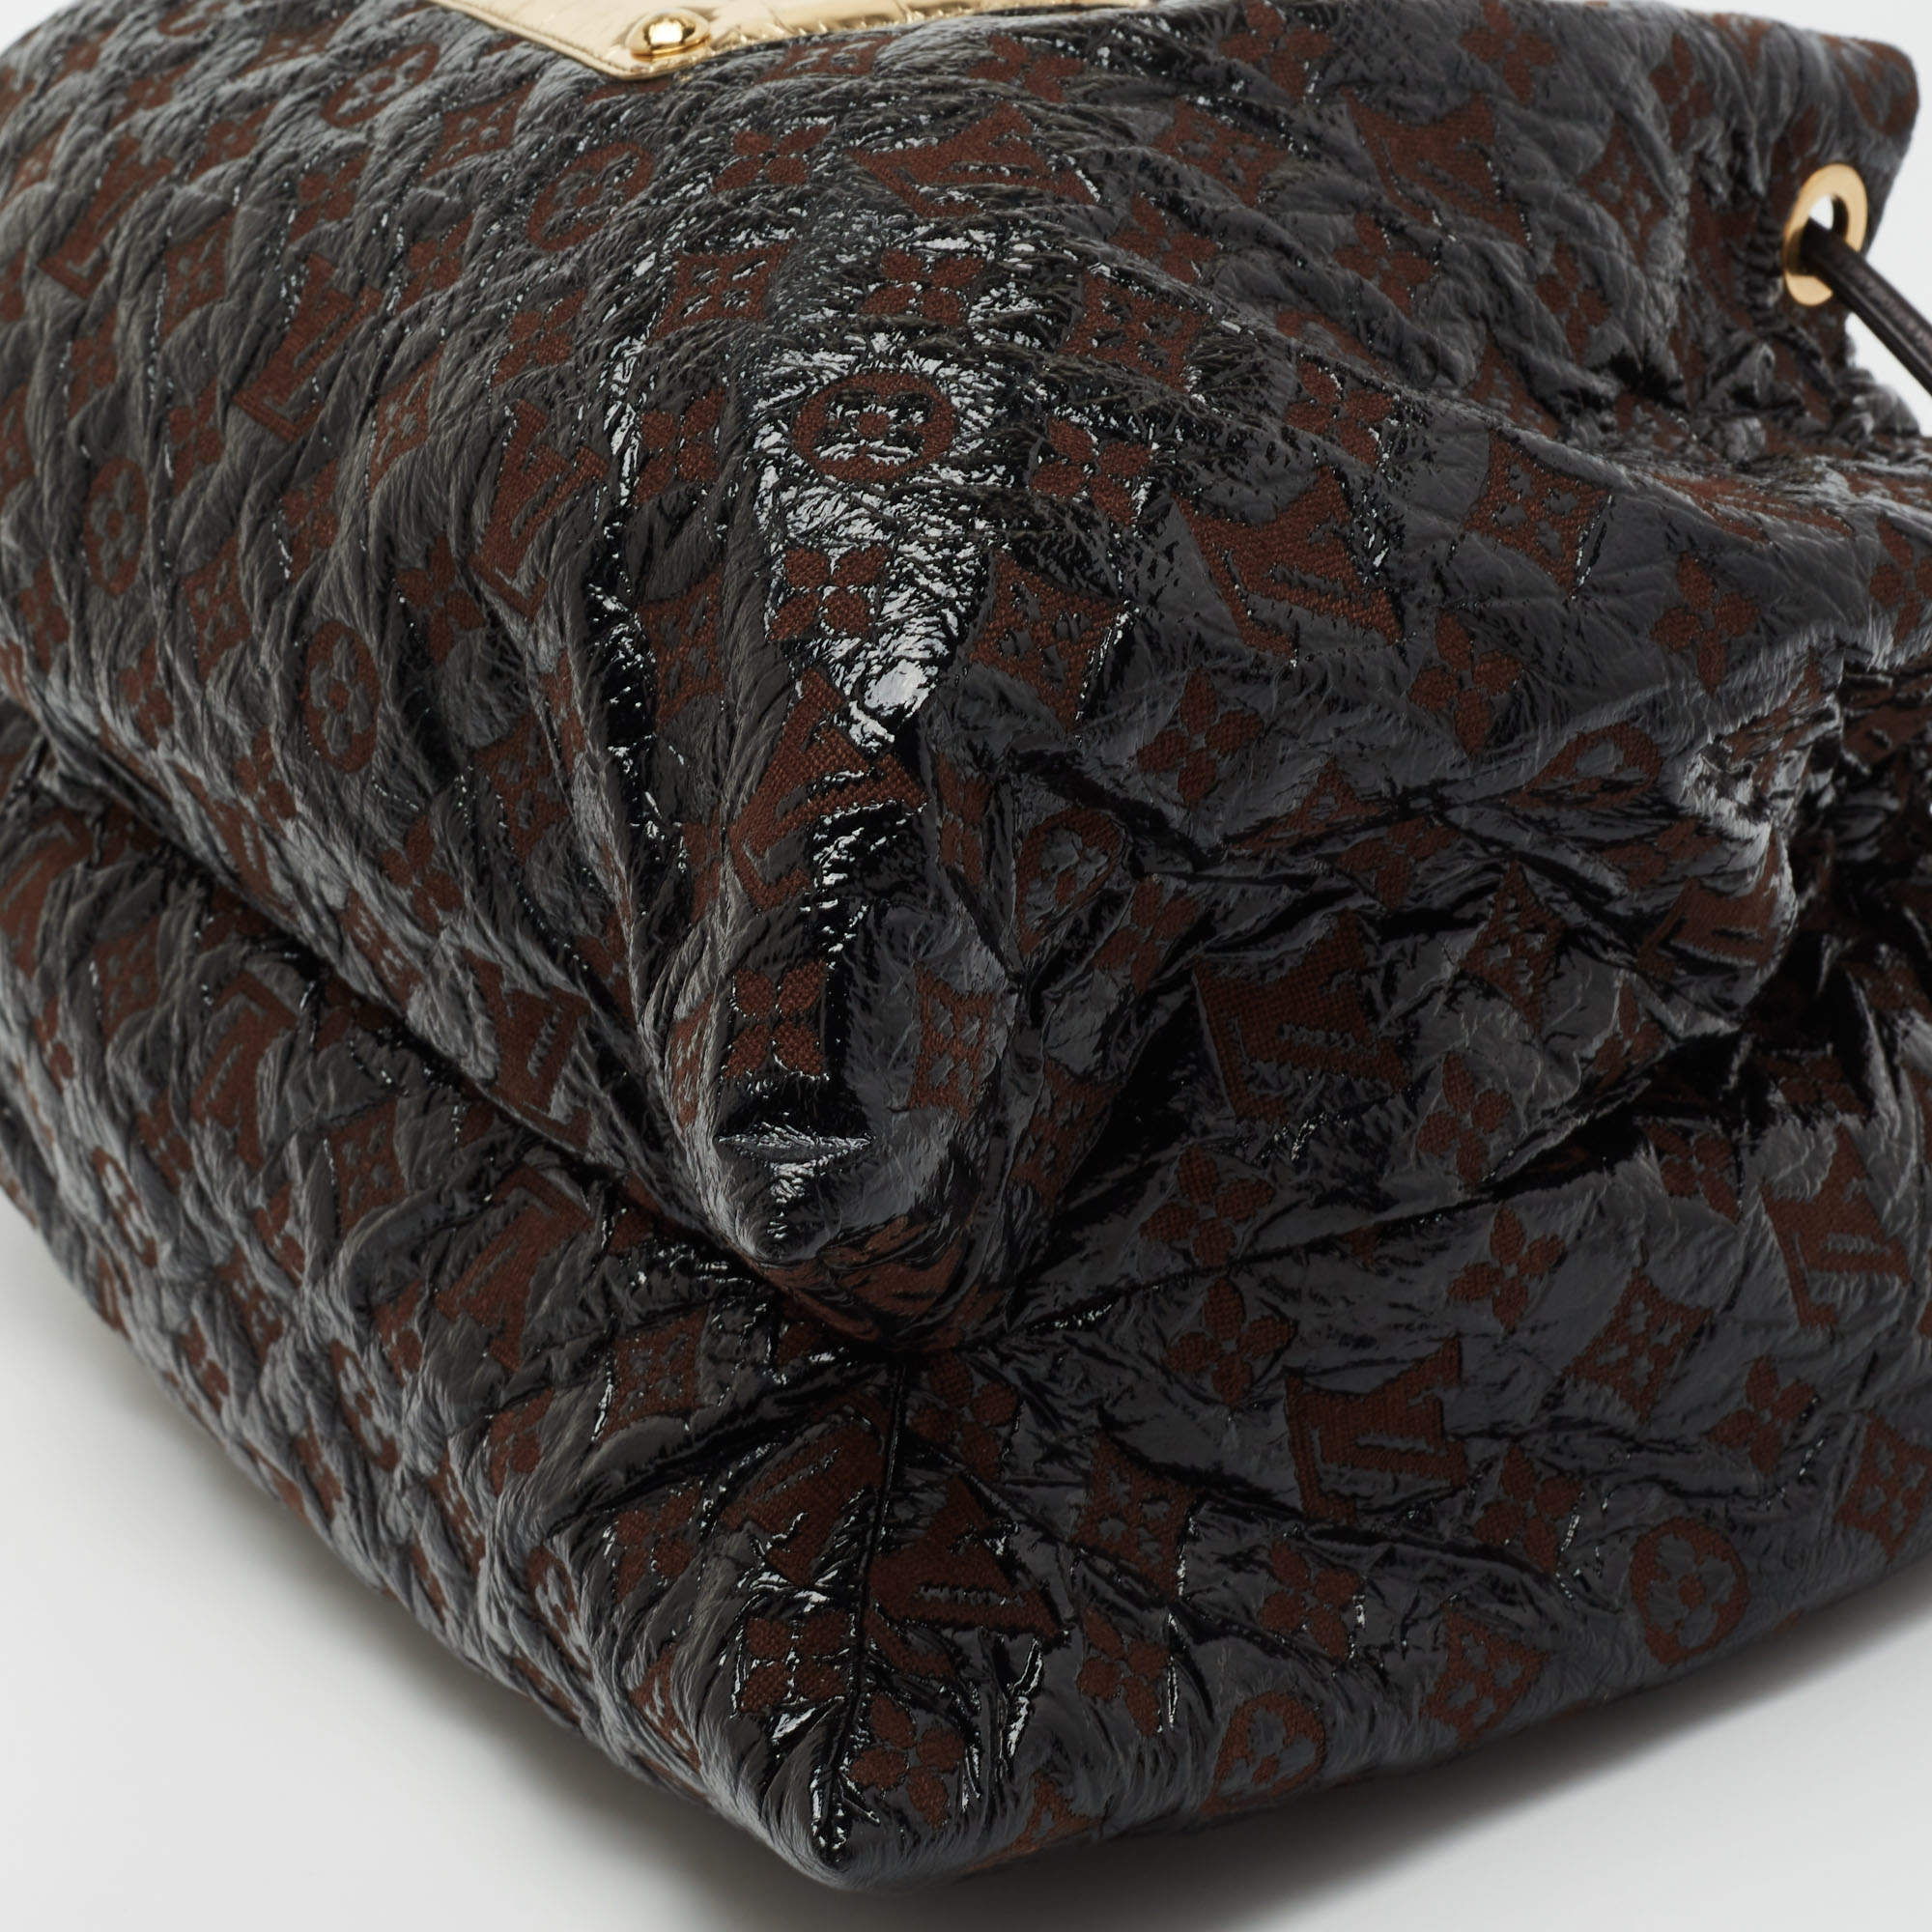 Black Louis Vuitton Monogram Vinyl Squishy Shoulder Bag